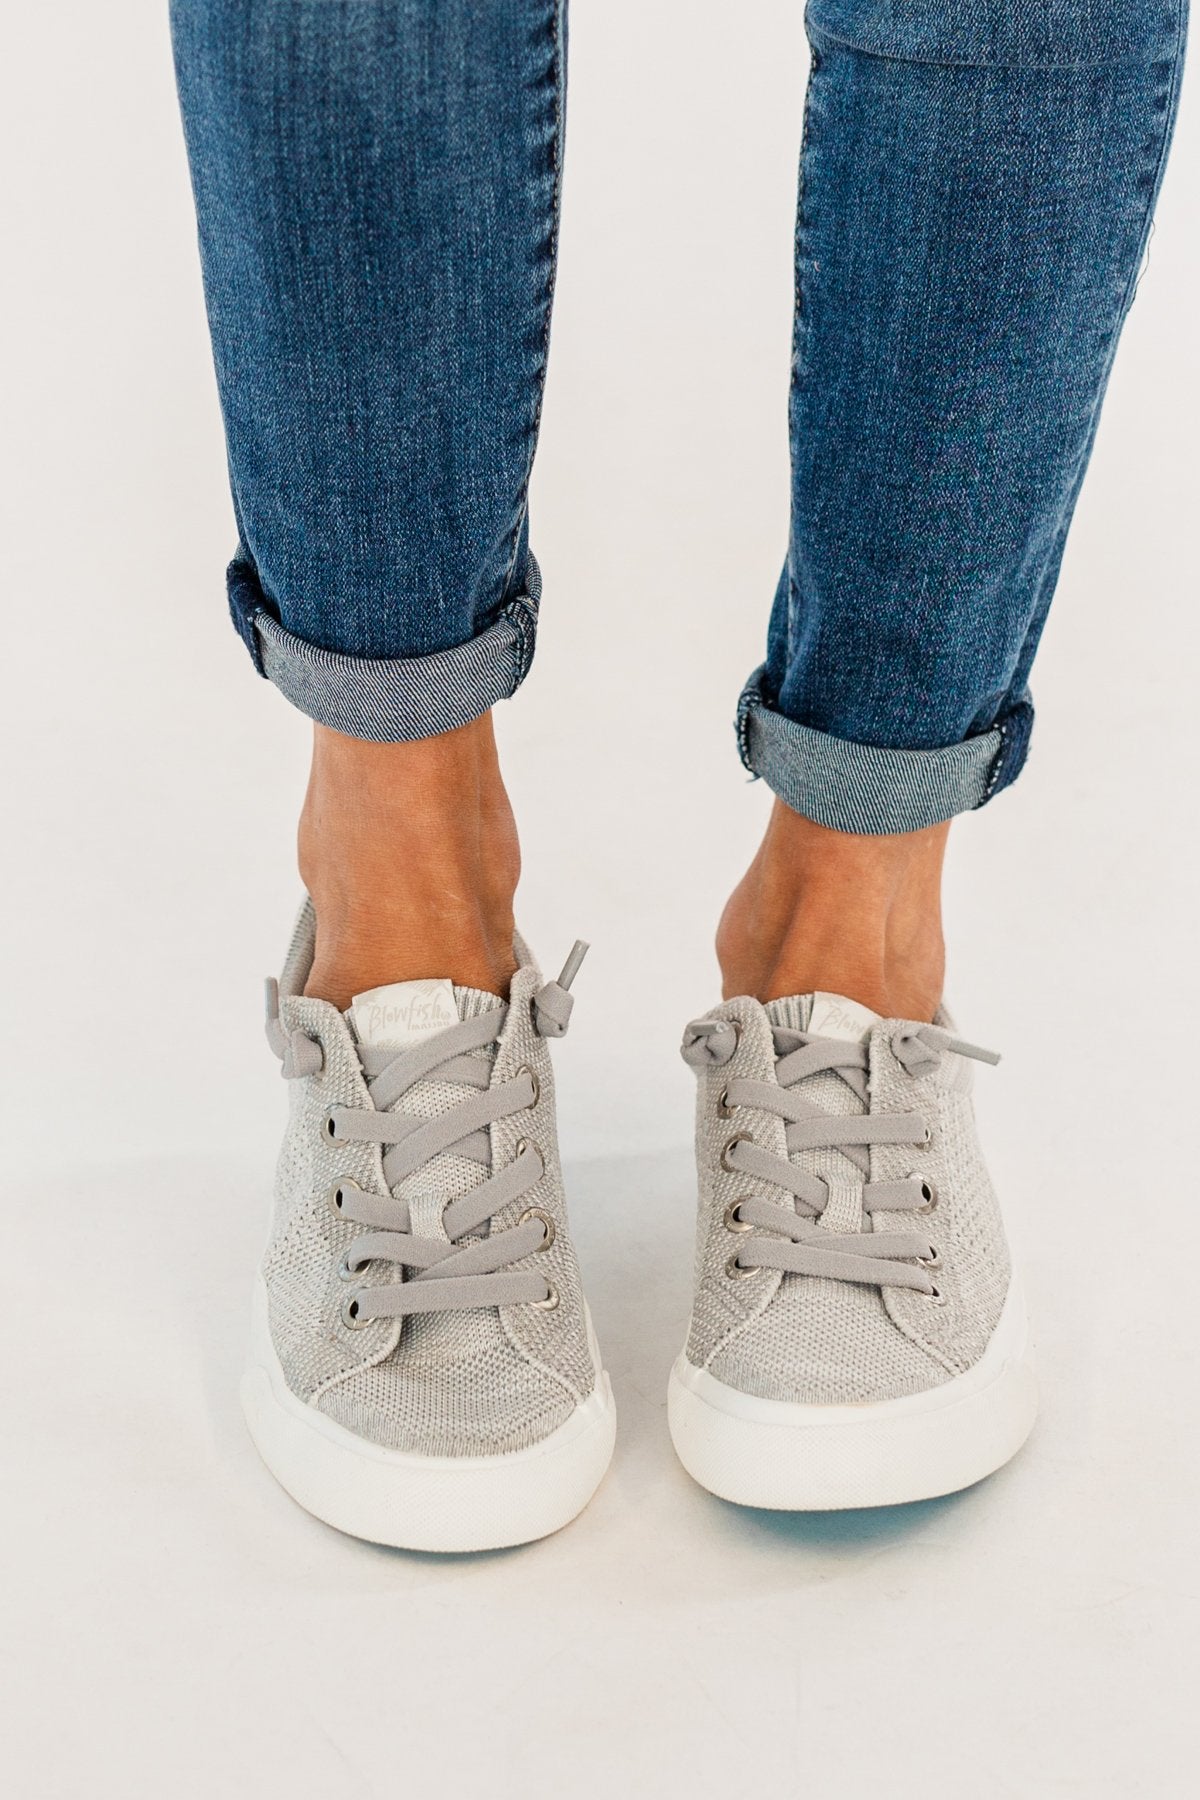 Blowfish Poppy Sneaker- Off White & Light Gray